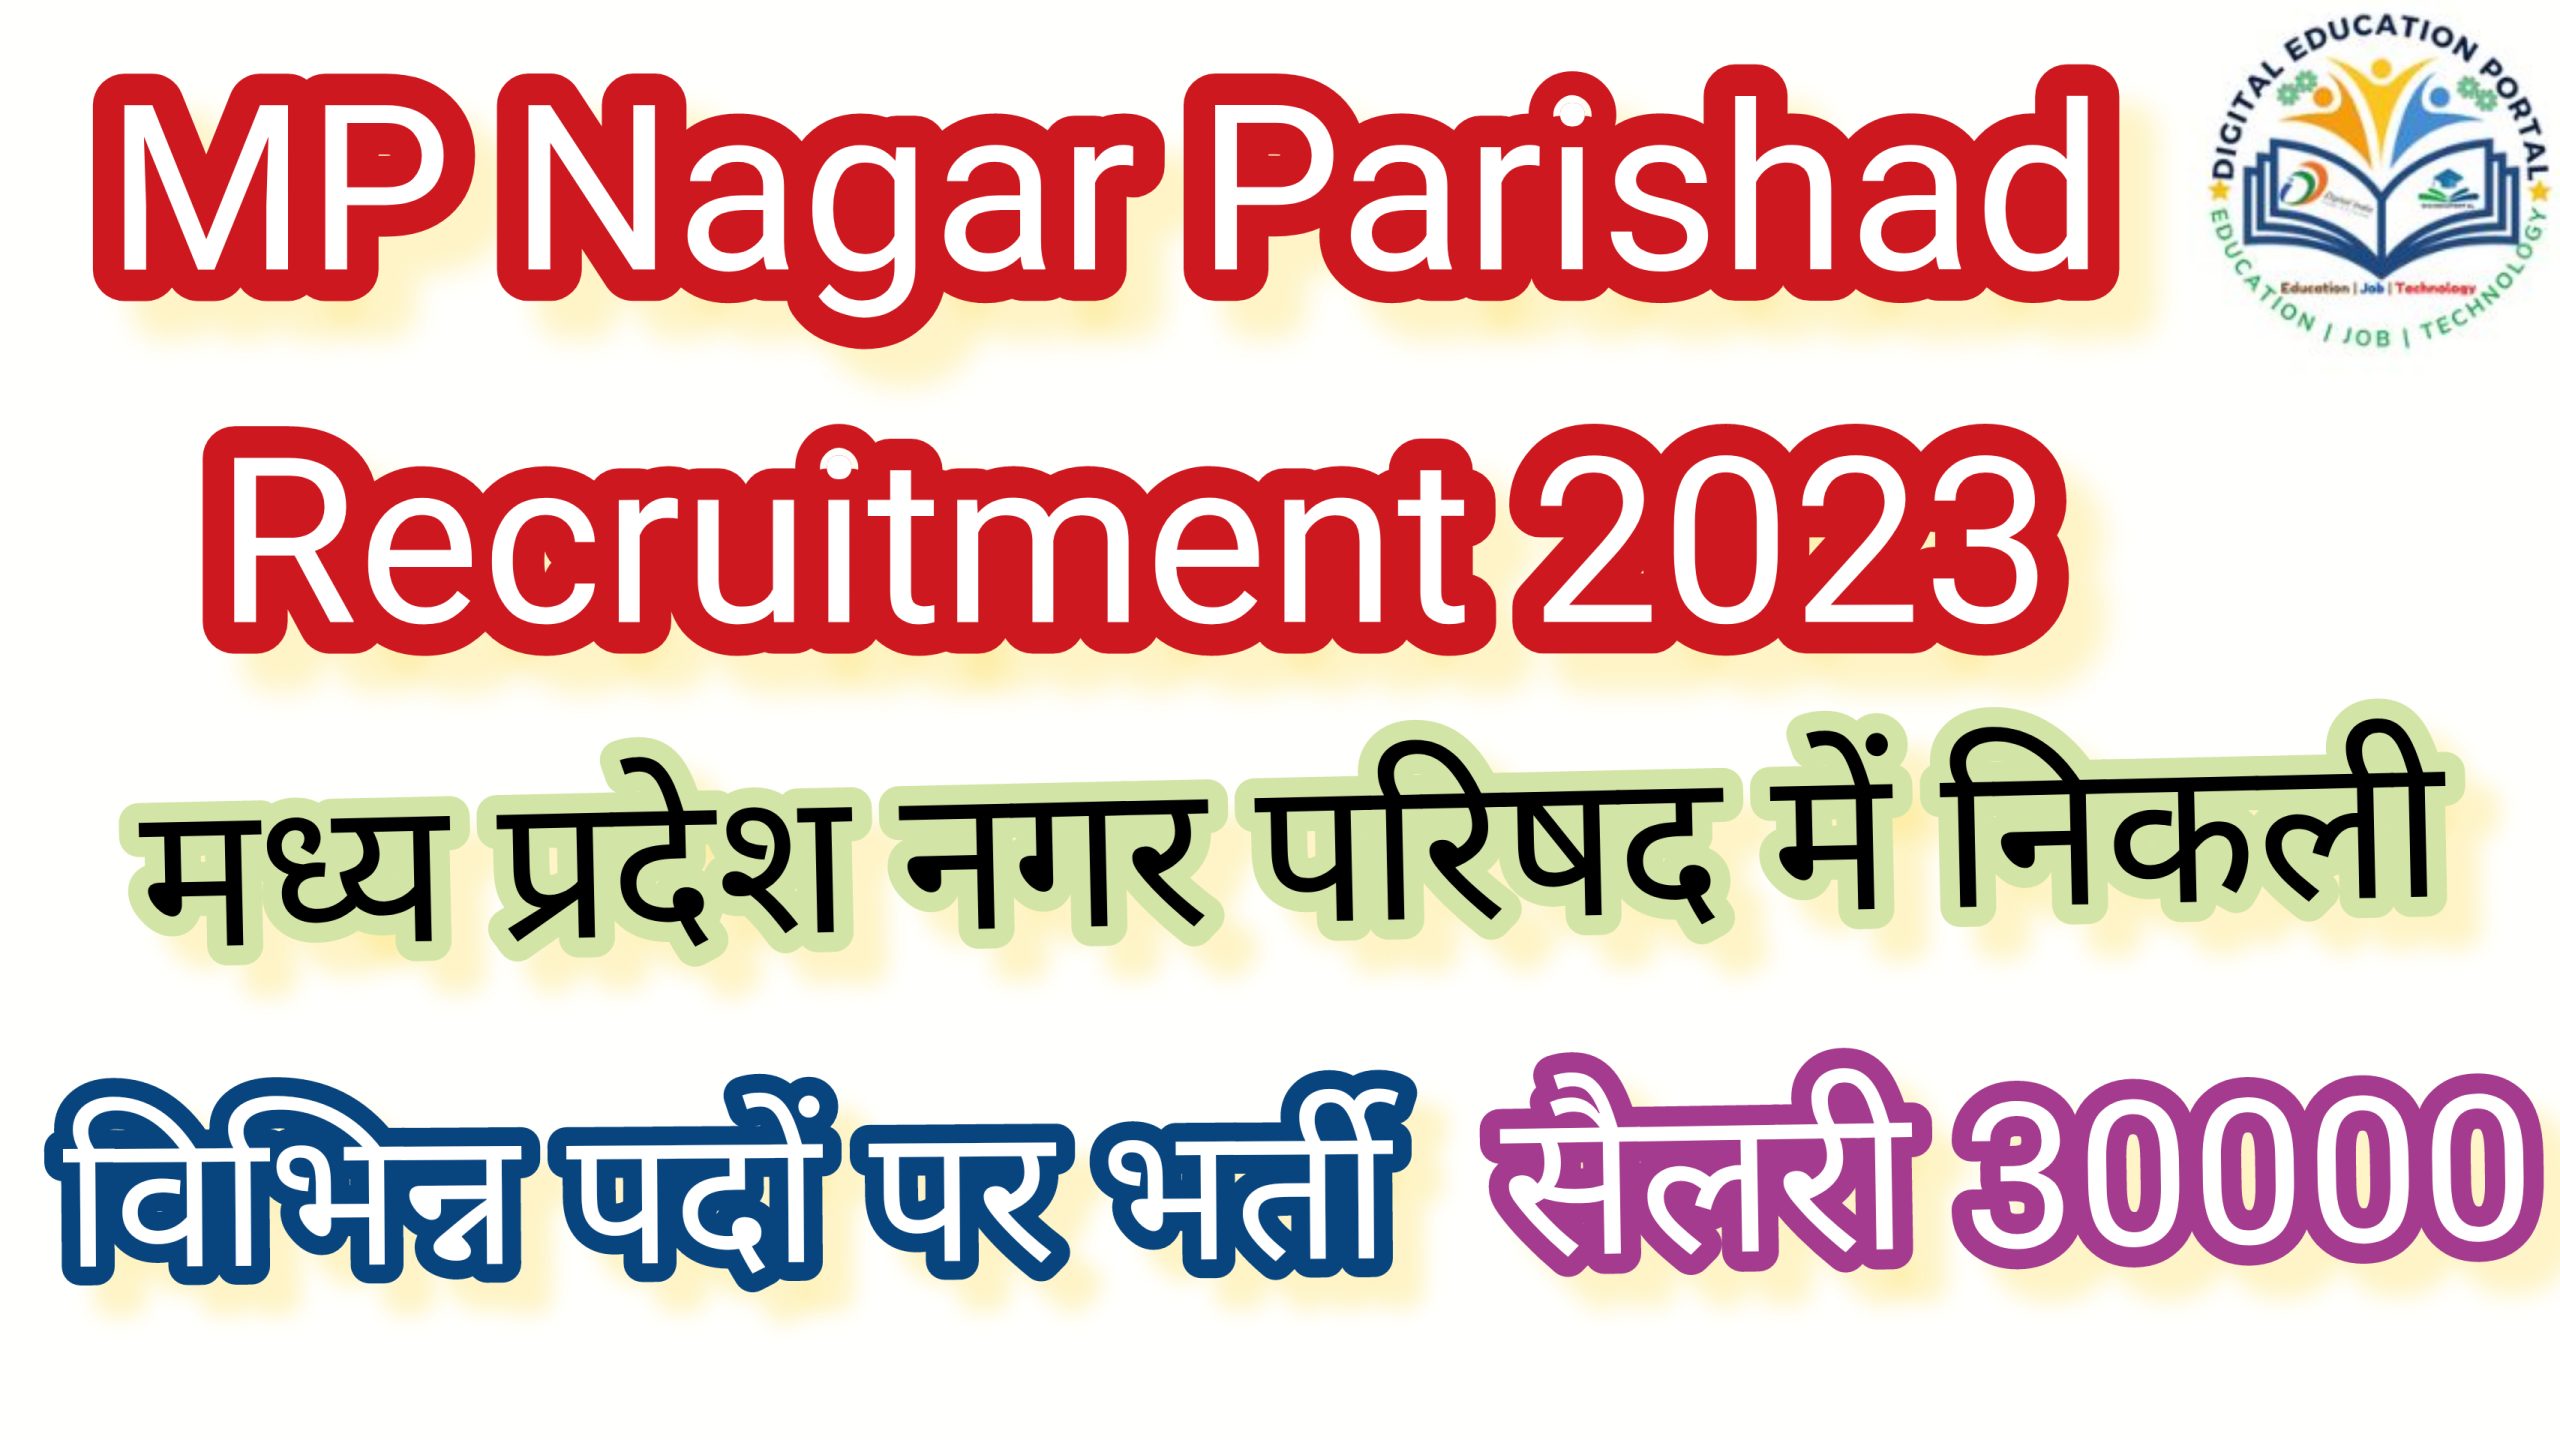 MP Nagar Parishad Recruitment 2023 मध्य प्रदेश नगर परिषद में निकली